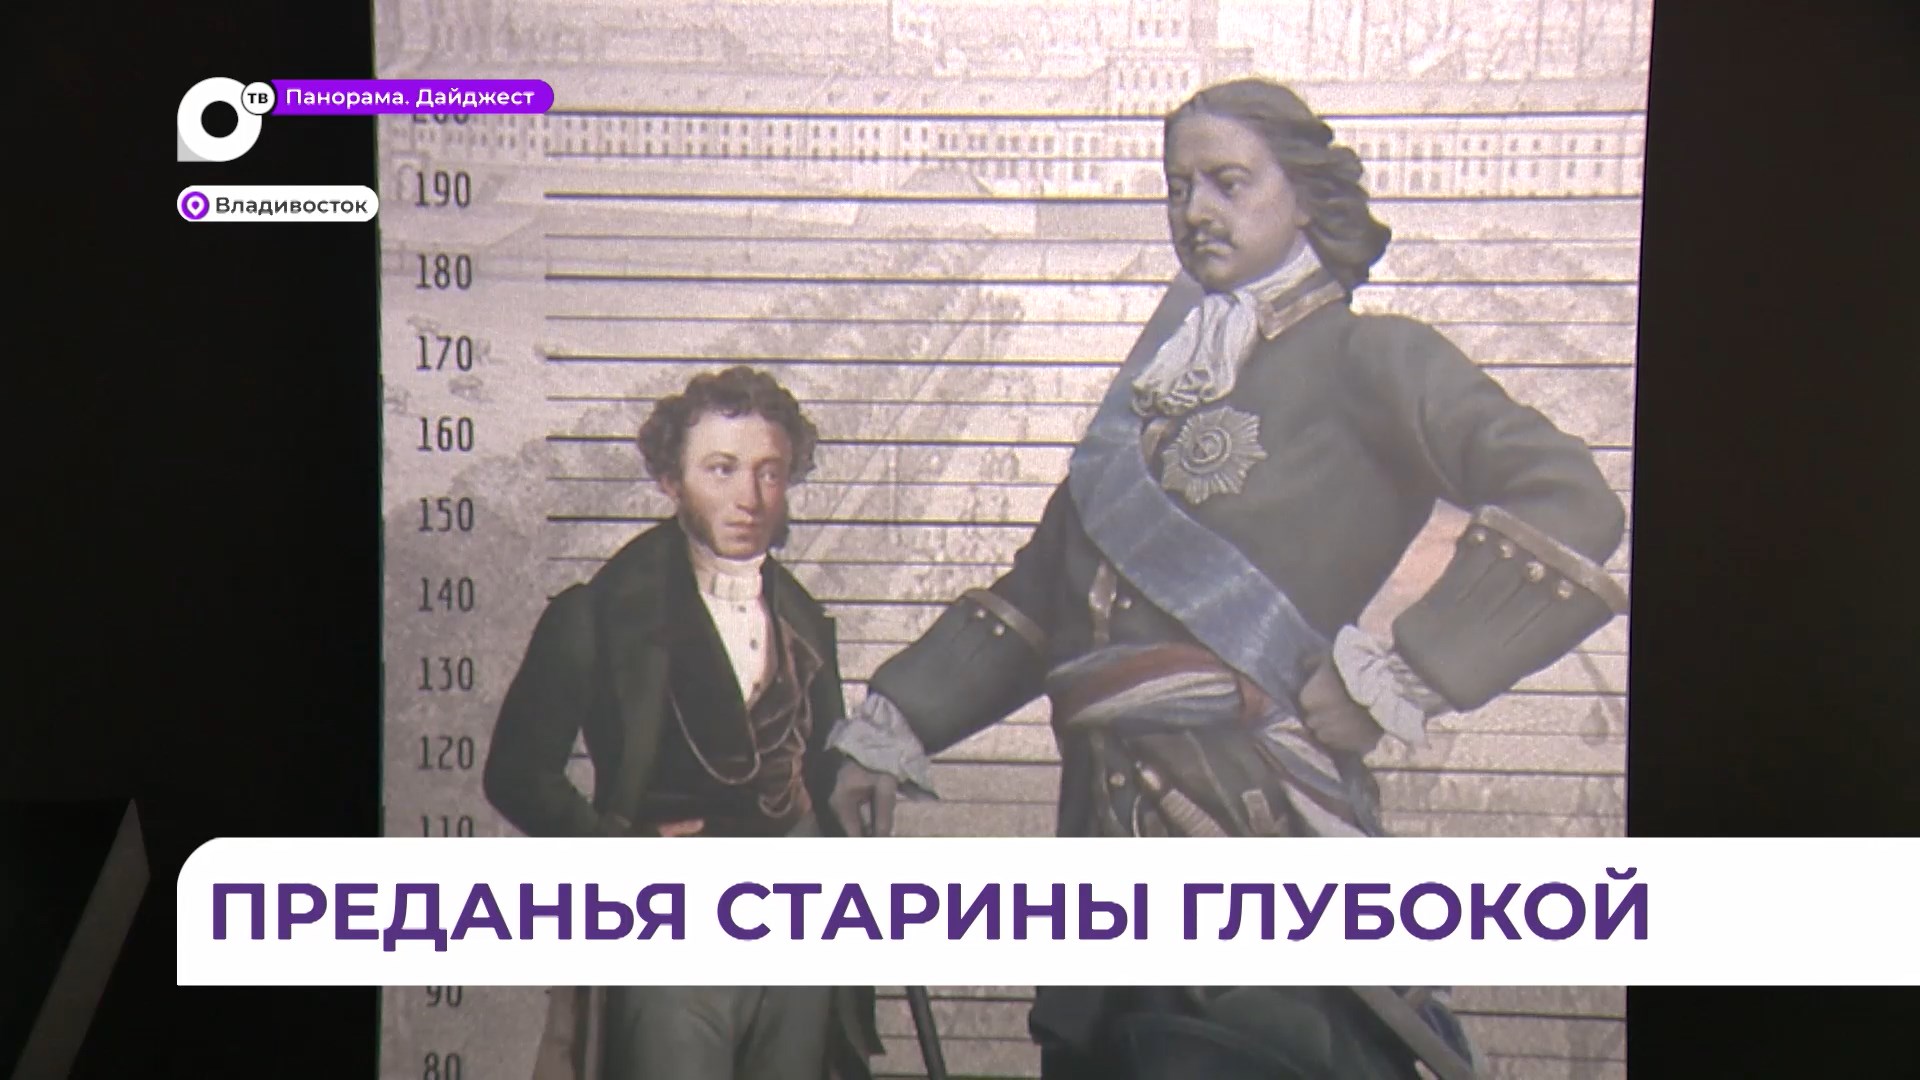 В парке «Россия - моя история» открыли выставку к 225-летию со дня рождения Пушкина